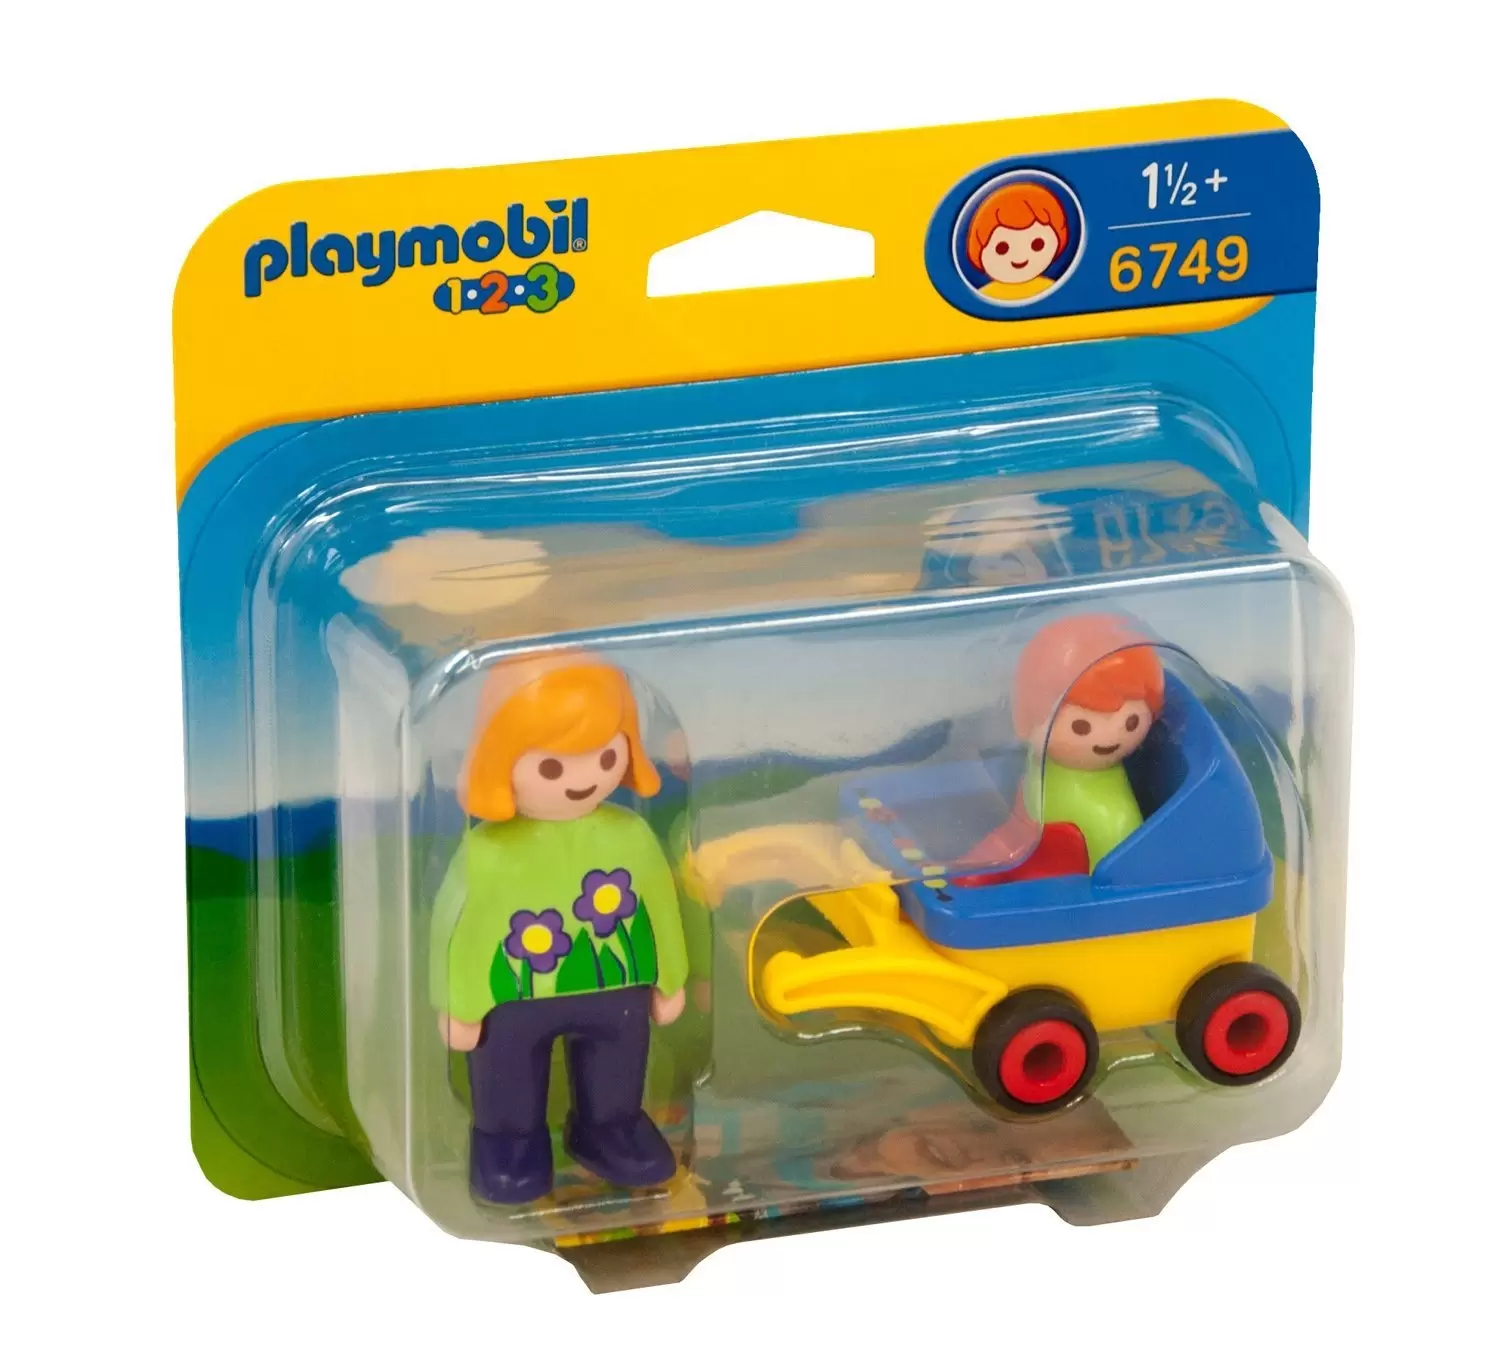 Playmobil 1.2.3 - Maman avec poussette